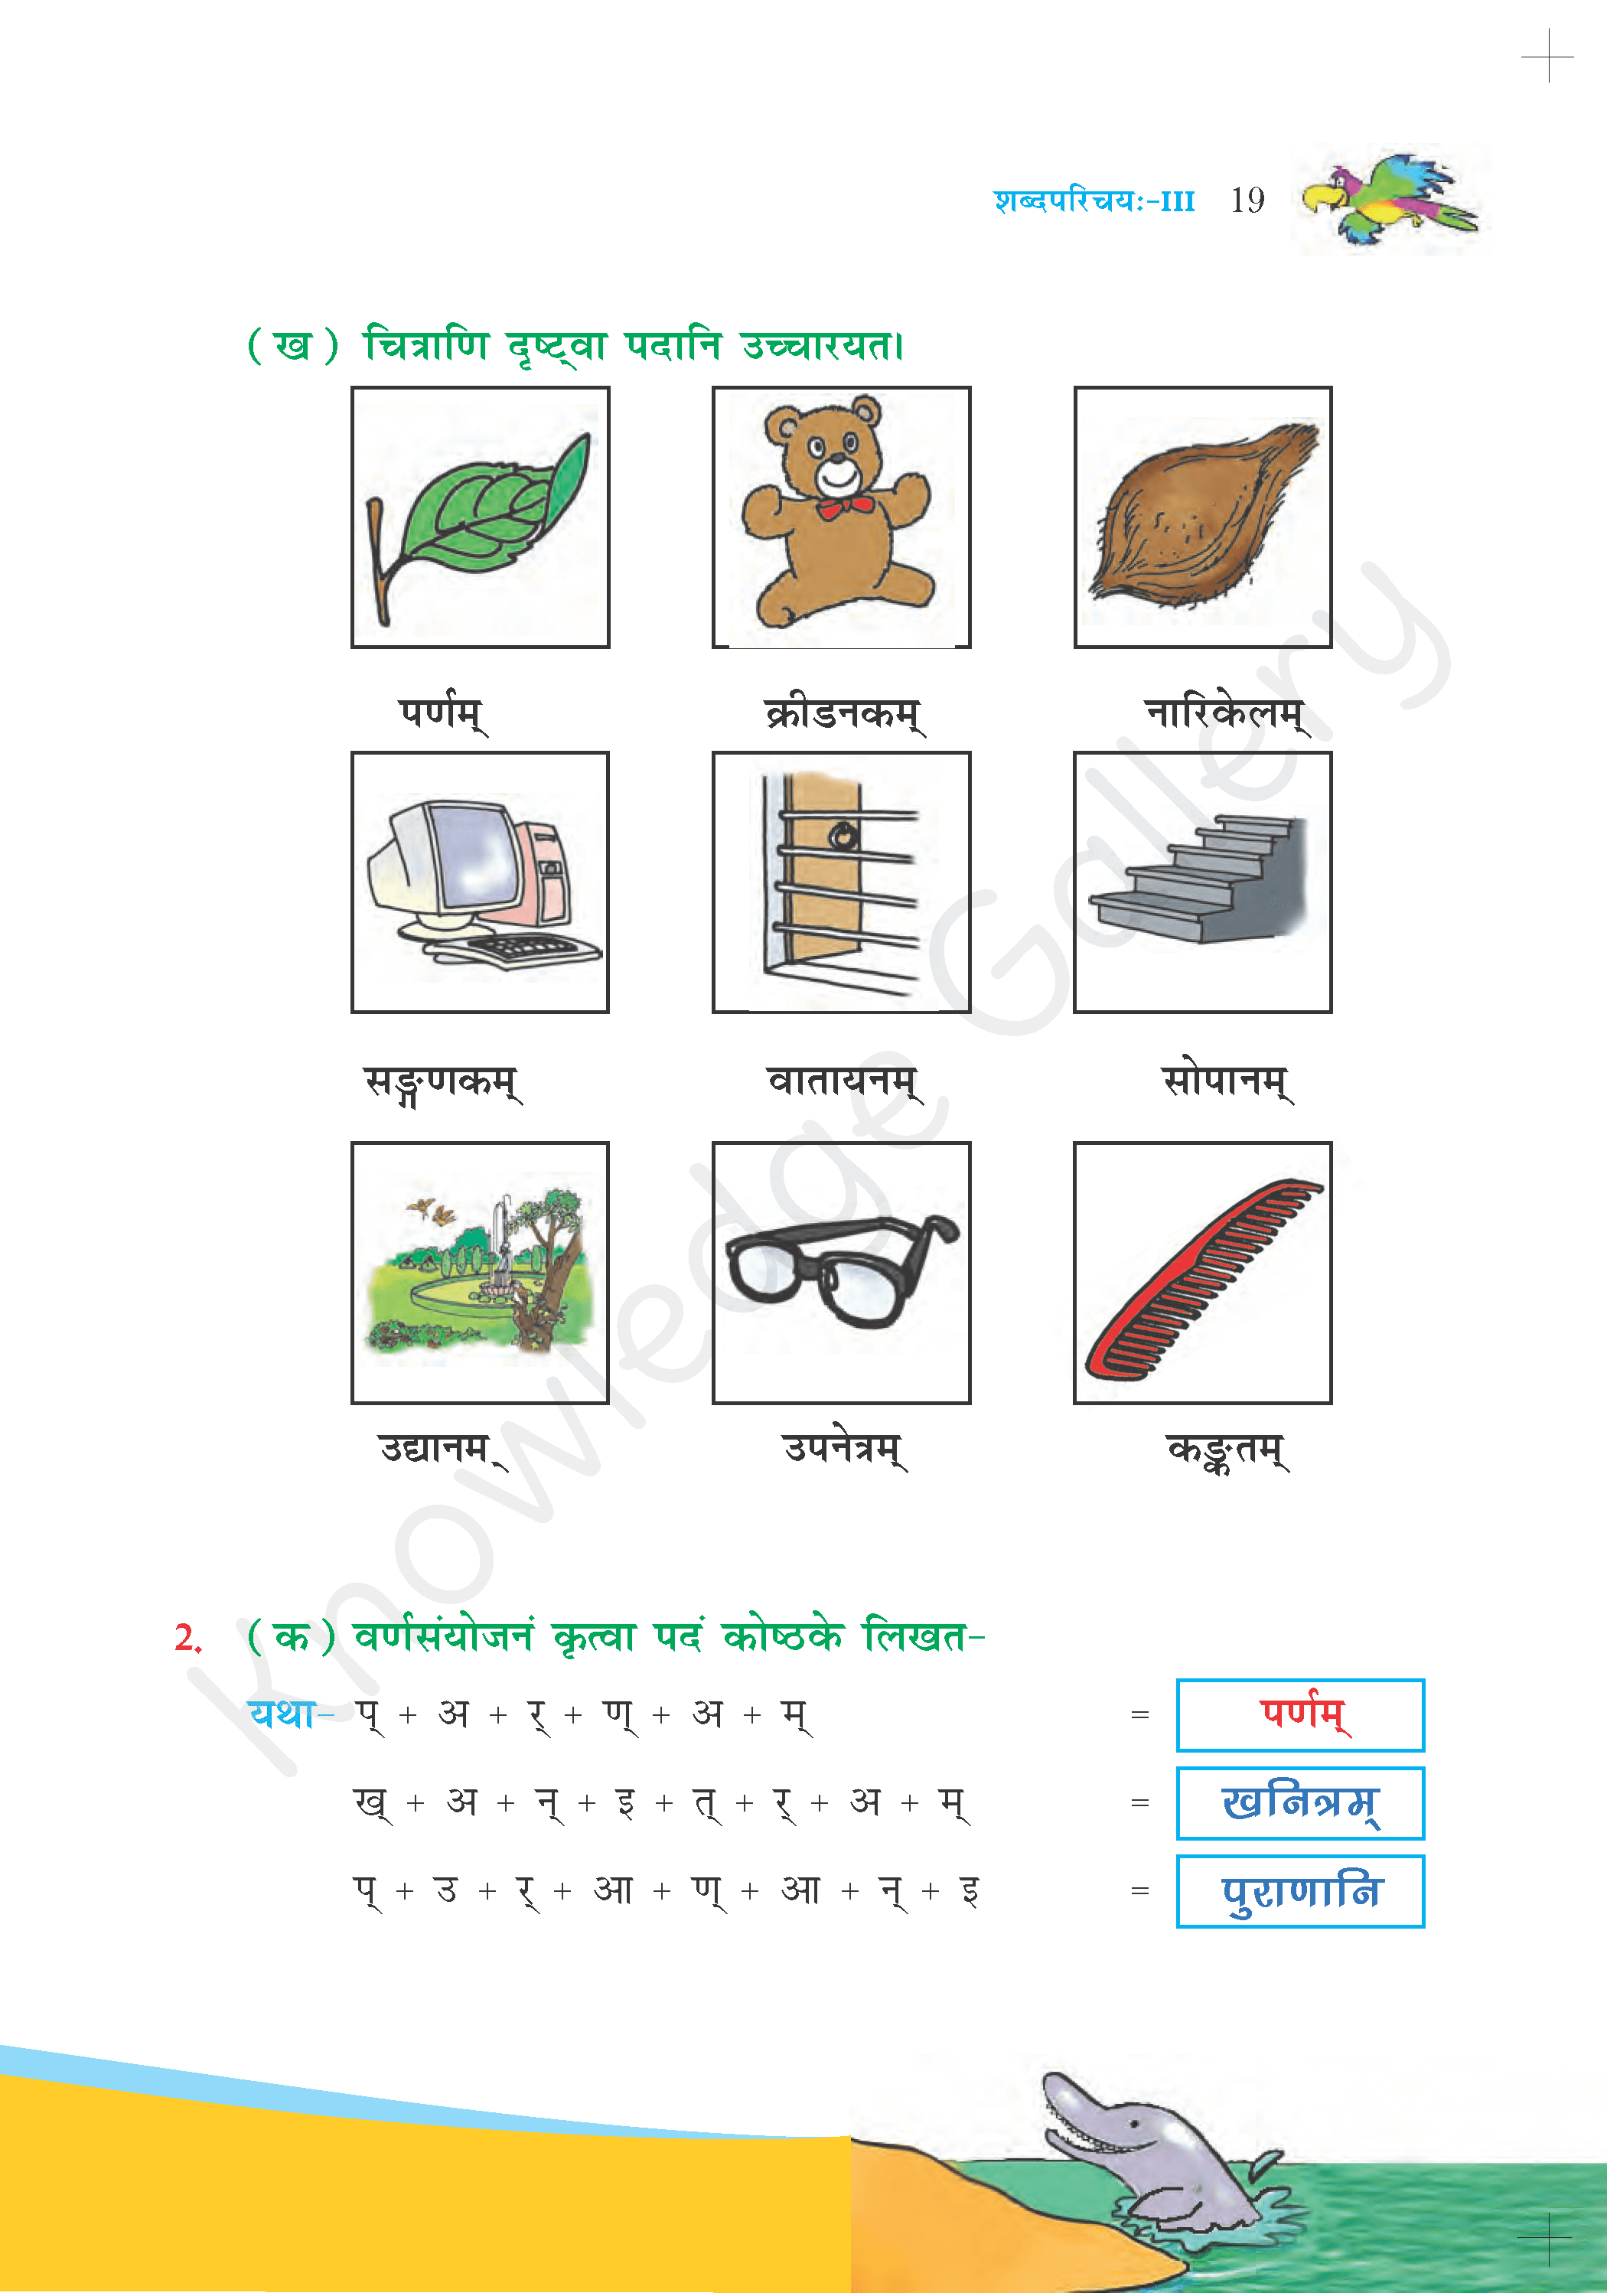 NCERT Solution For Class 6 Sanskrit Chapter 3 part 4